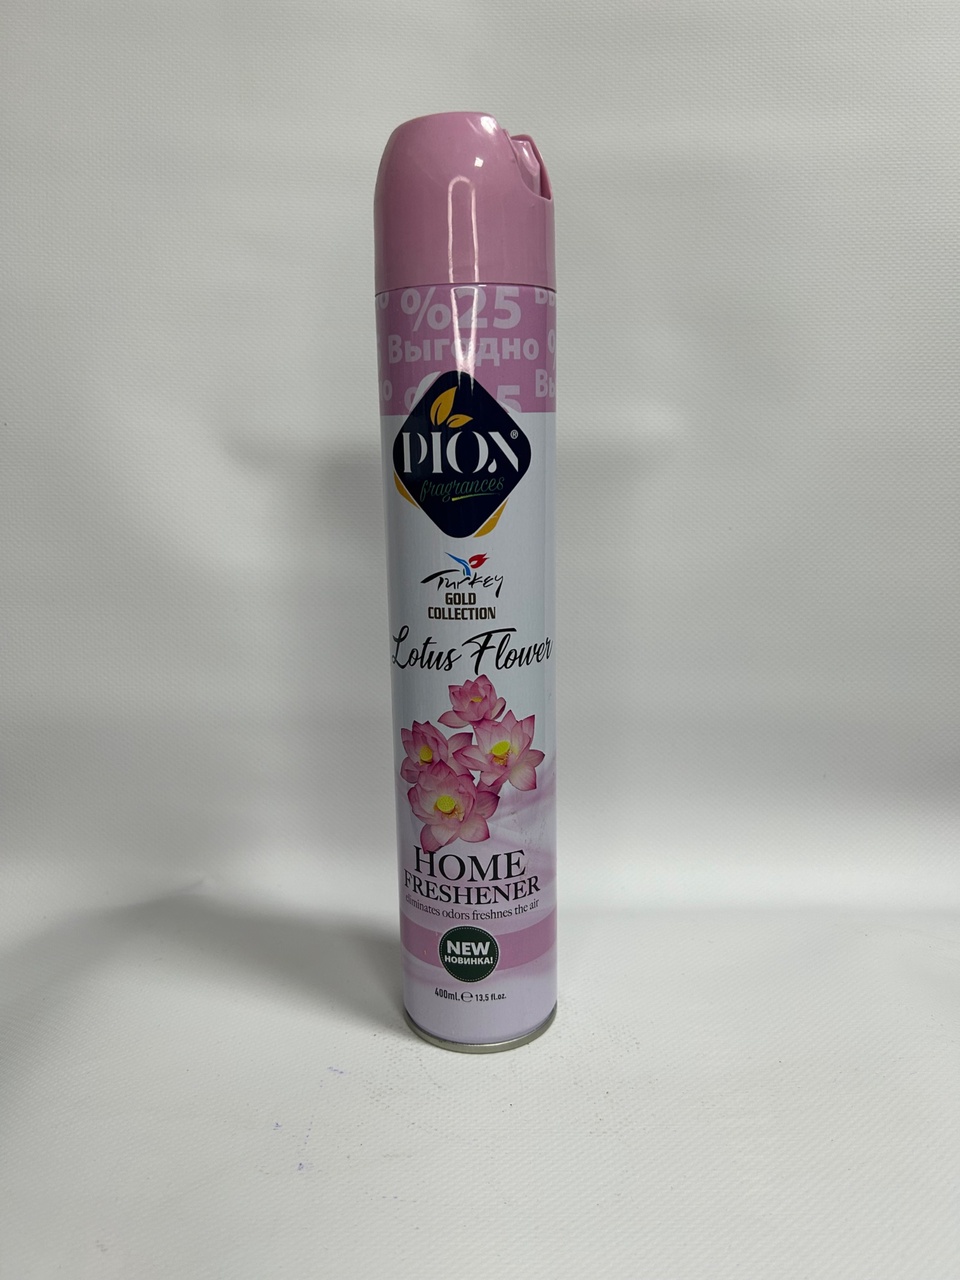 Освежитель воздуха Diox с ароматом «Свежесть лотоса» 400ml - 130 ₽, заказать онлайн.